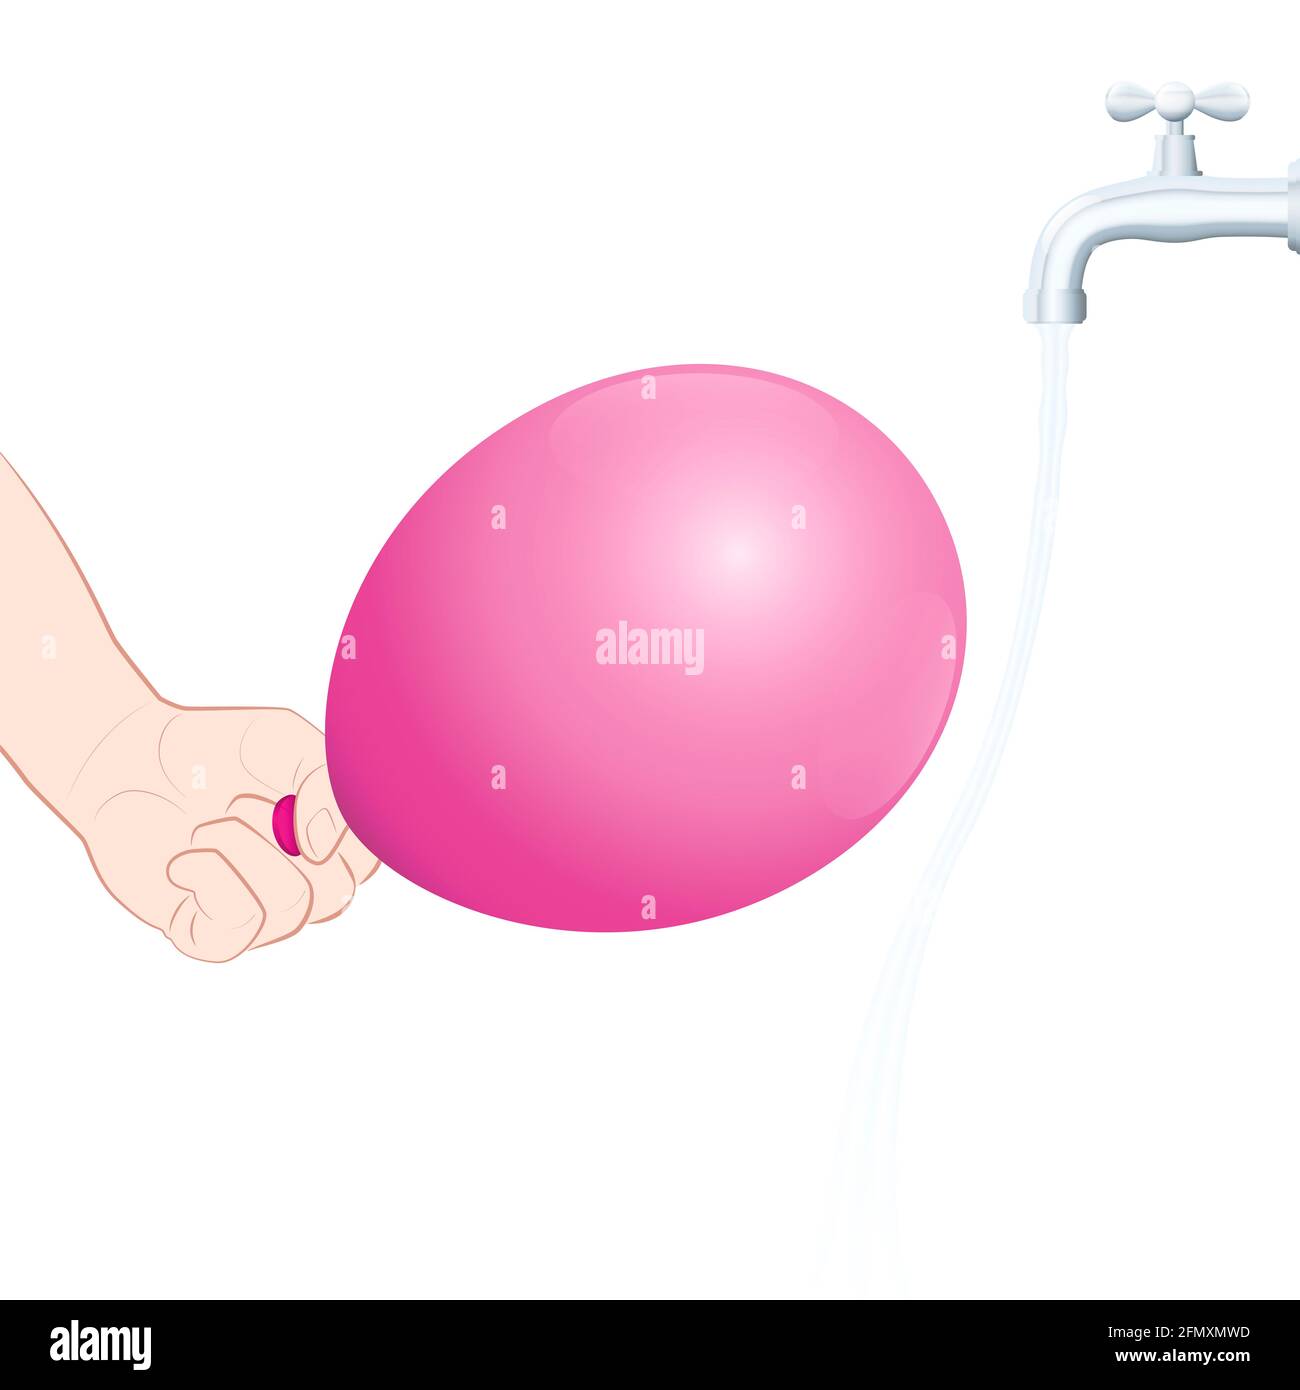 Agua de flexión causada por un globo cargado. Atracción estática, experimento físico. Ponga el grifo en marcha suavemente, frote el globo sobre su cabello. Foto de stock